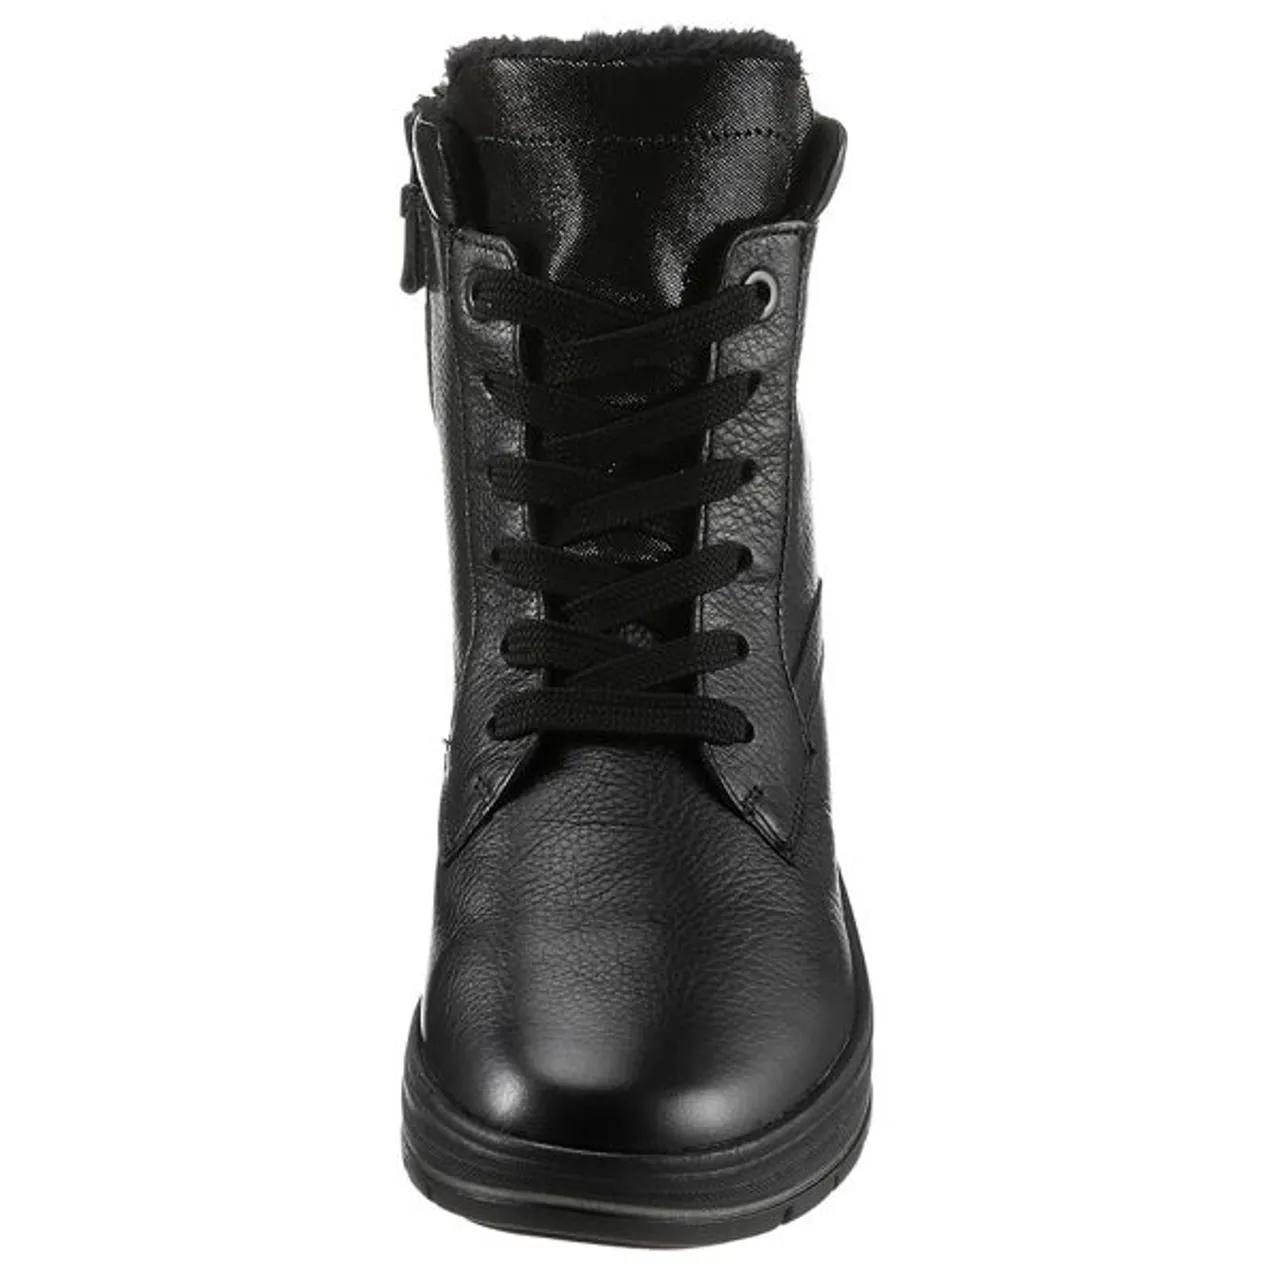 Winterboots ARA "CLAIS KEIL ST." Gr. 6 (39), schwarz (black) Damen Schuhe Reißverschlussstiefeletten mit komfortabler Schuhweite G (weit)